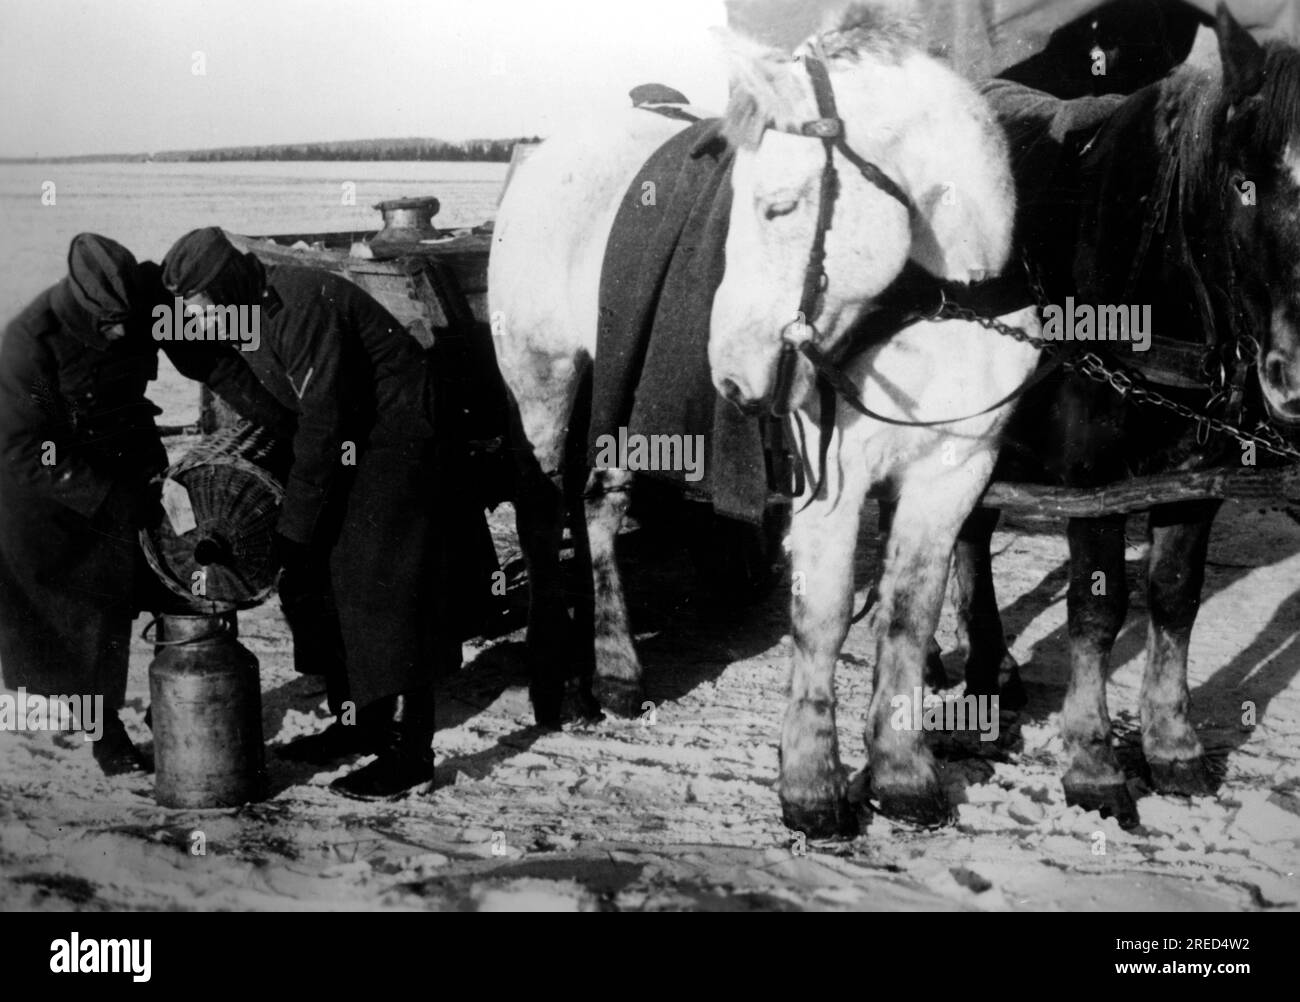 Während des deutschen Angriffs auf Moskau im zentralen Teil der Ostfront füllen Soldaten Rum in einen Krug in einer Rationsstation. Foto: Gebauer. [Maschinelle Übersetzung] Stockfoto